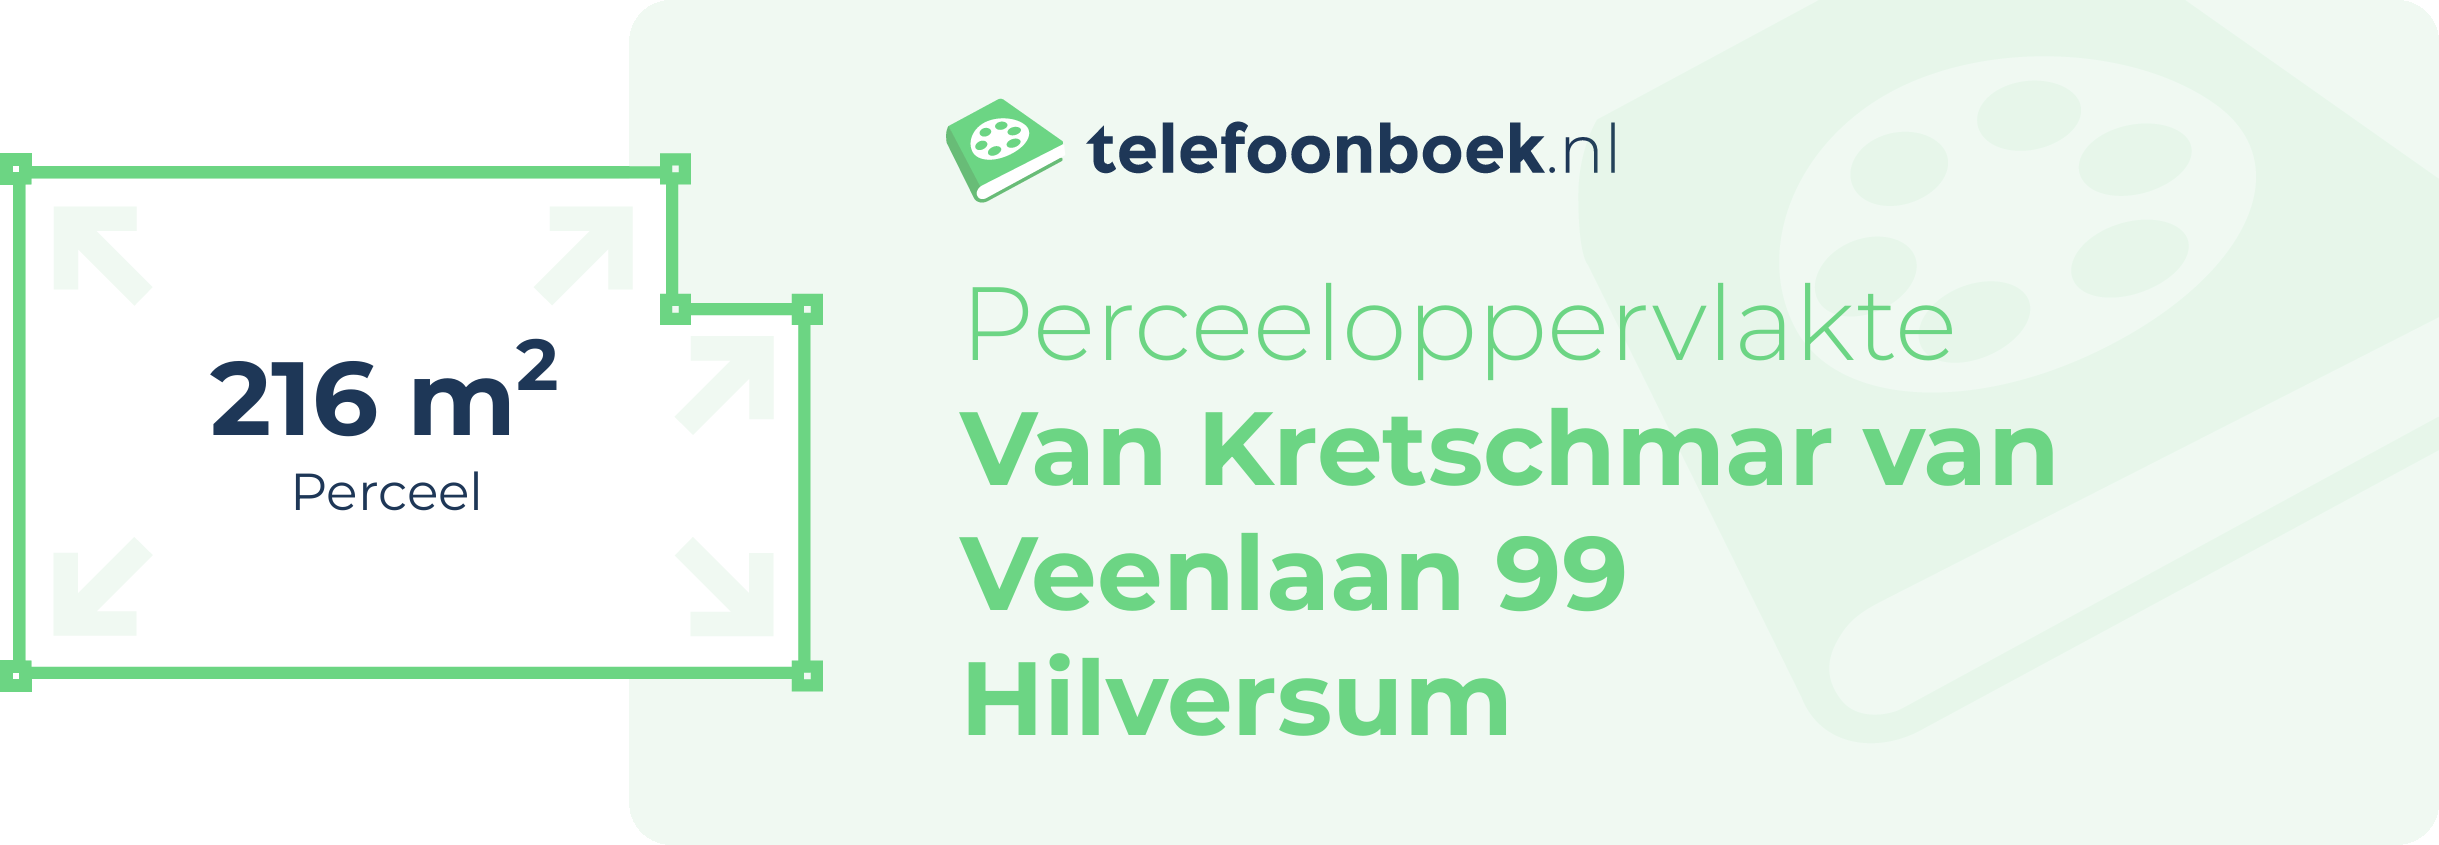 Perceeloppervlakte Van Kretschmar Van Veenlaan 99 Hilversum